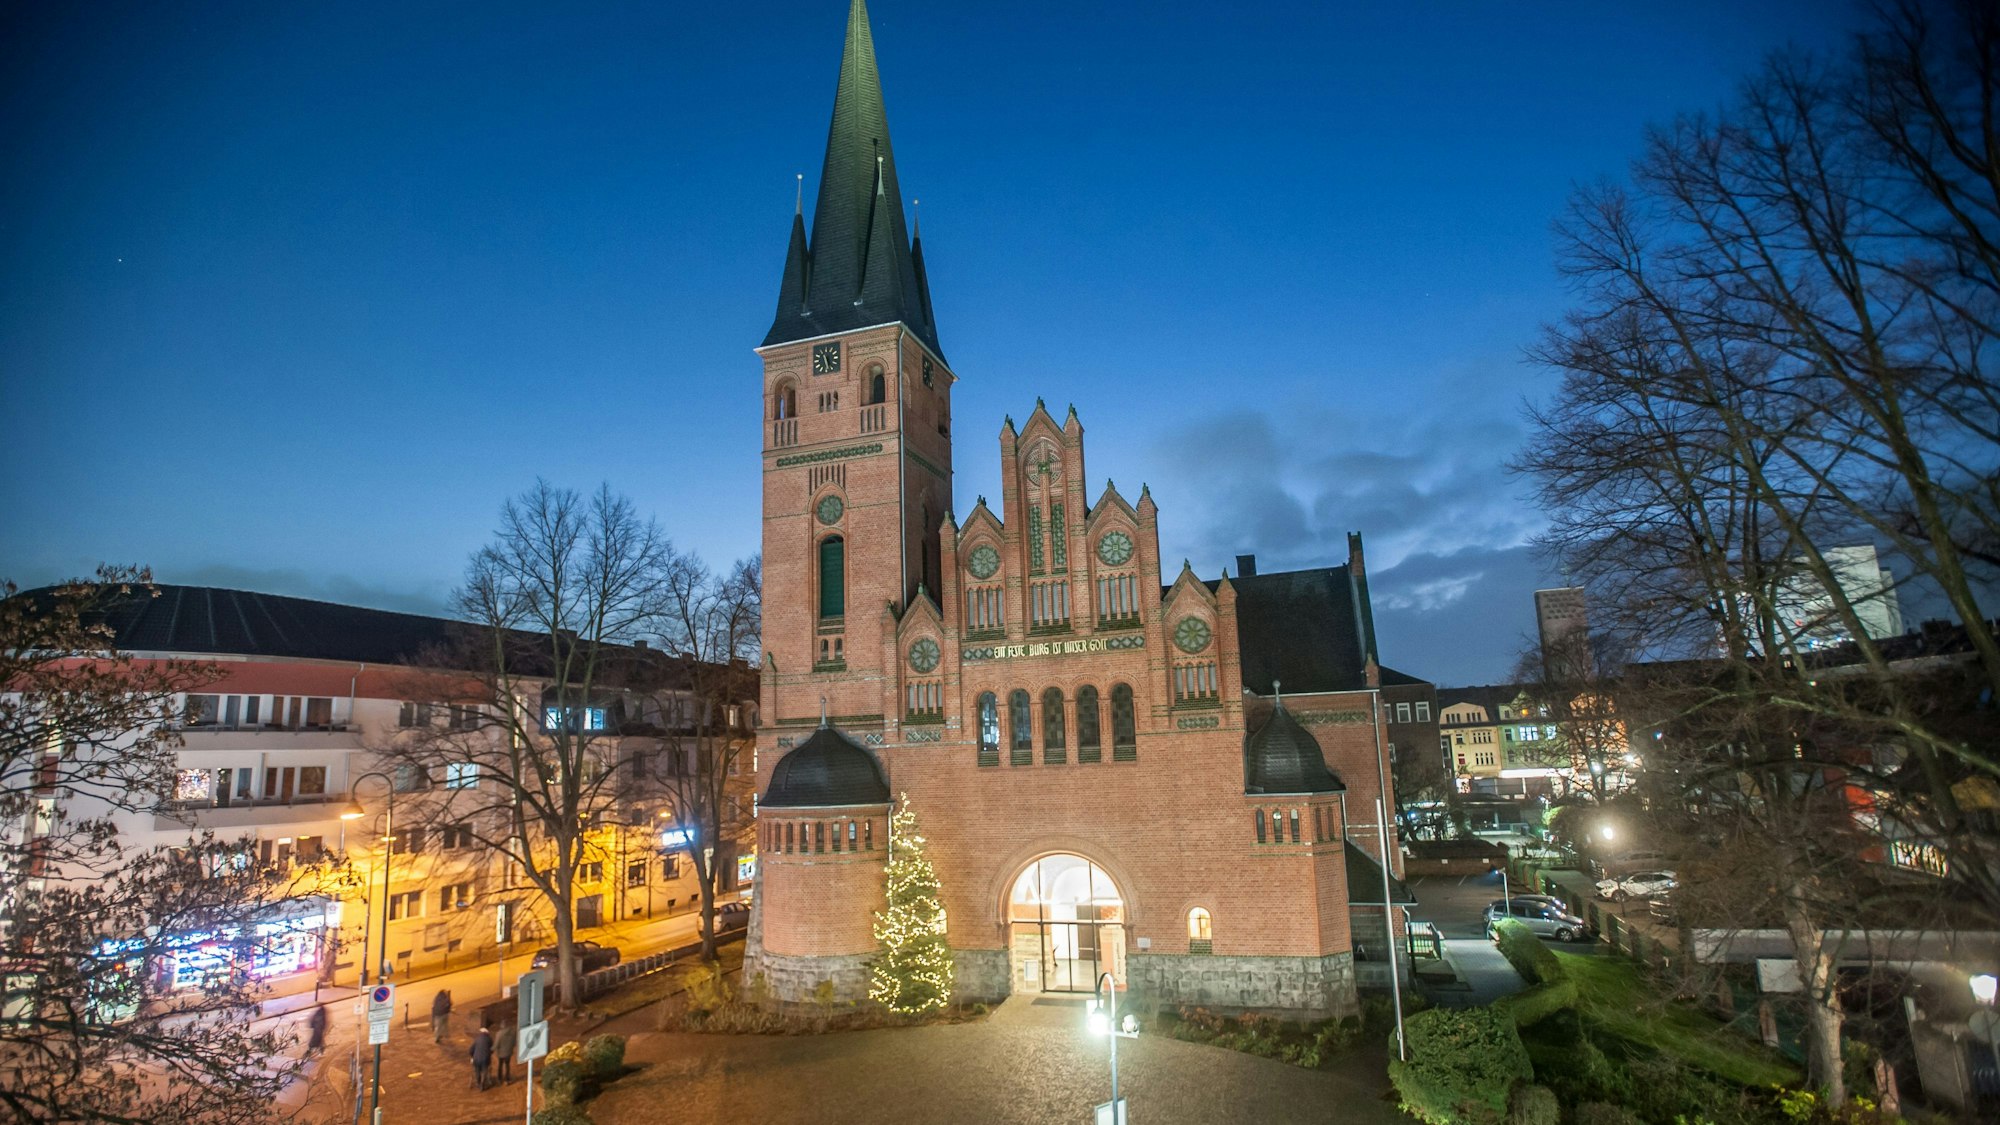 Die evangelische Christuskirche in Wiesdorf. Vor der Kirche steht zur Weihnachtszeit ein geschmücktem Tannenbaum.